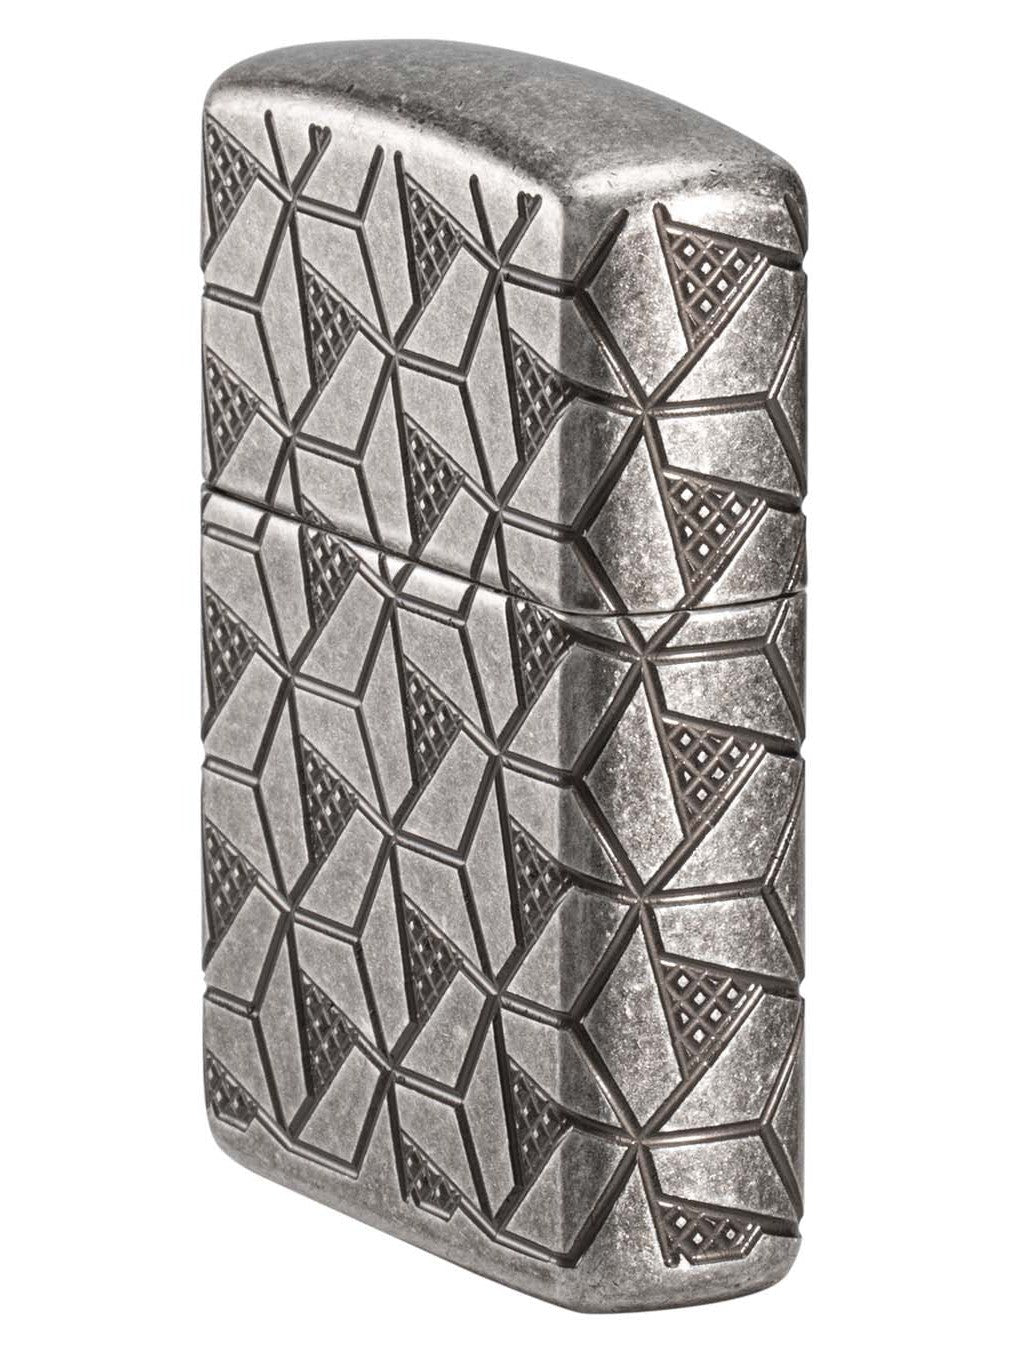 Zippo Lighter: Armor MultiCut Geometric Deep Carve - Antique Silver 49883